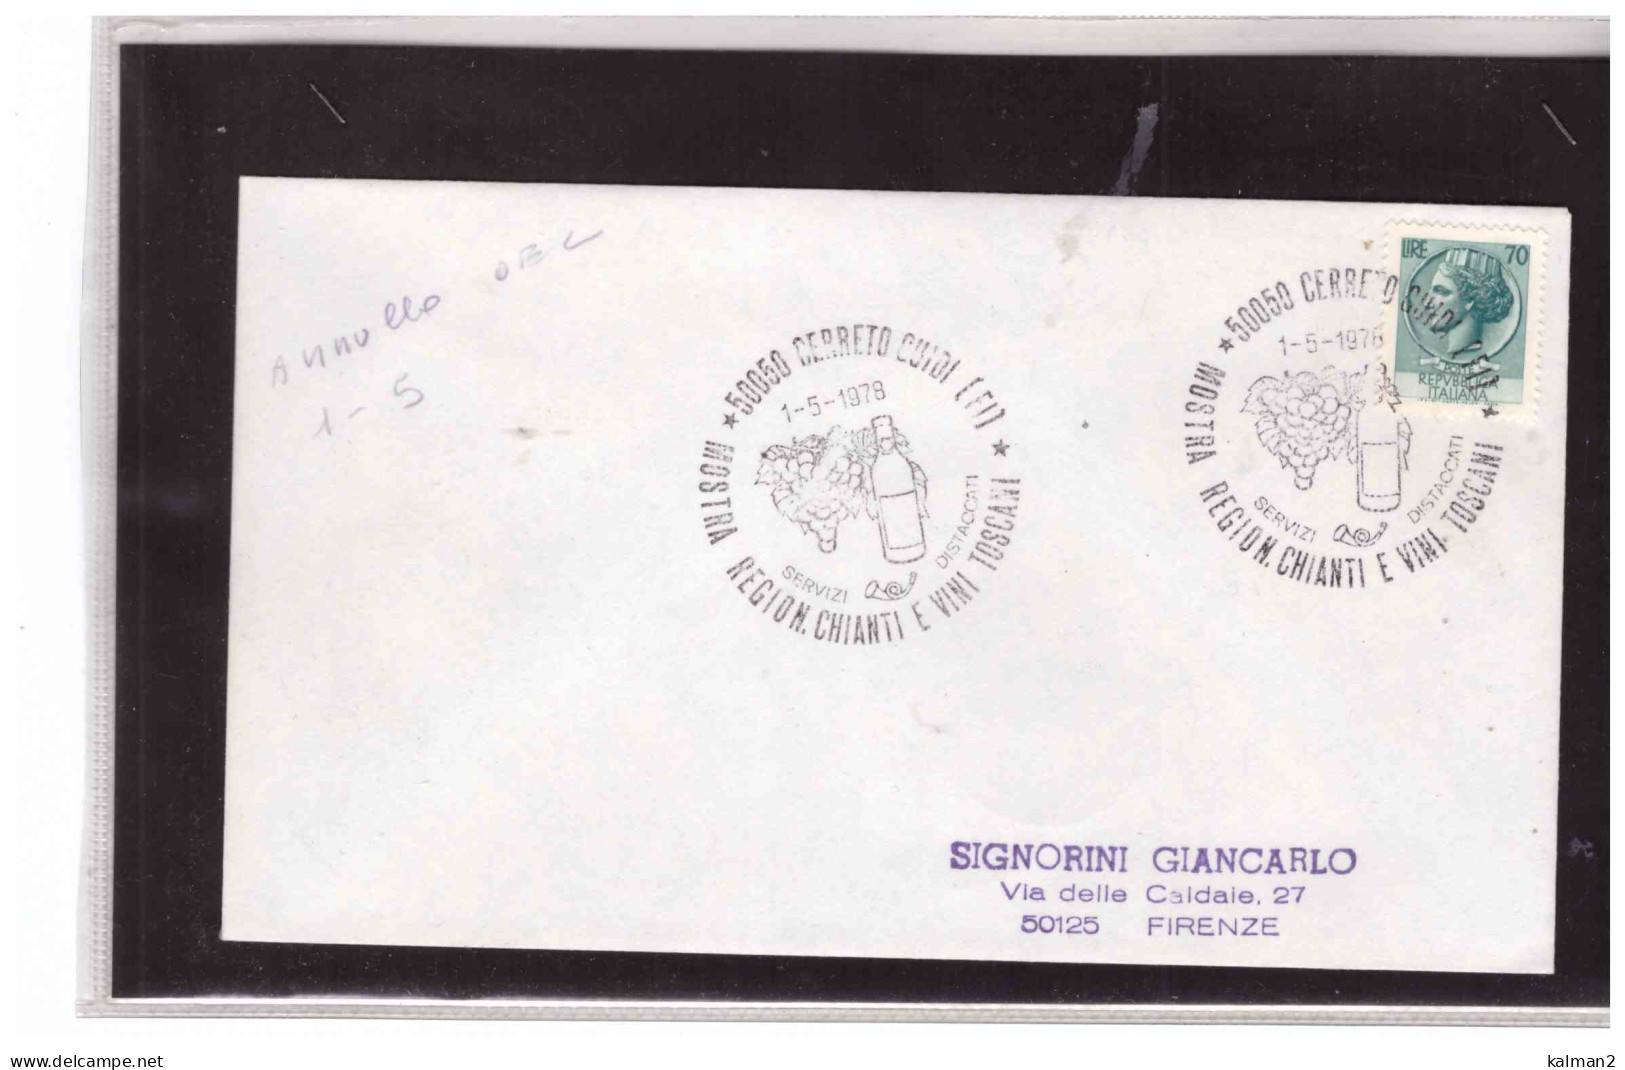 TEM17765 - CERRETO GUIDI 1.5.1978  /   MOSTRA REGIONALE CHIANTI E VINI TOSCANI - Agriculture